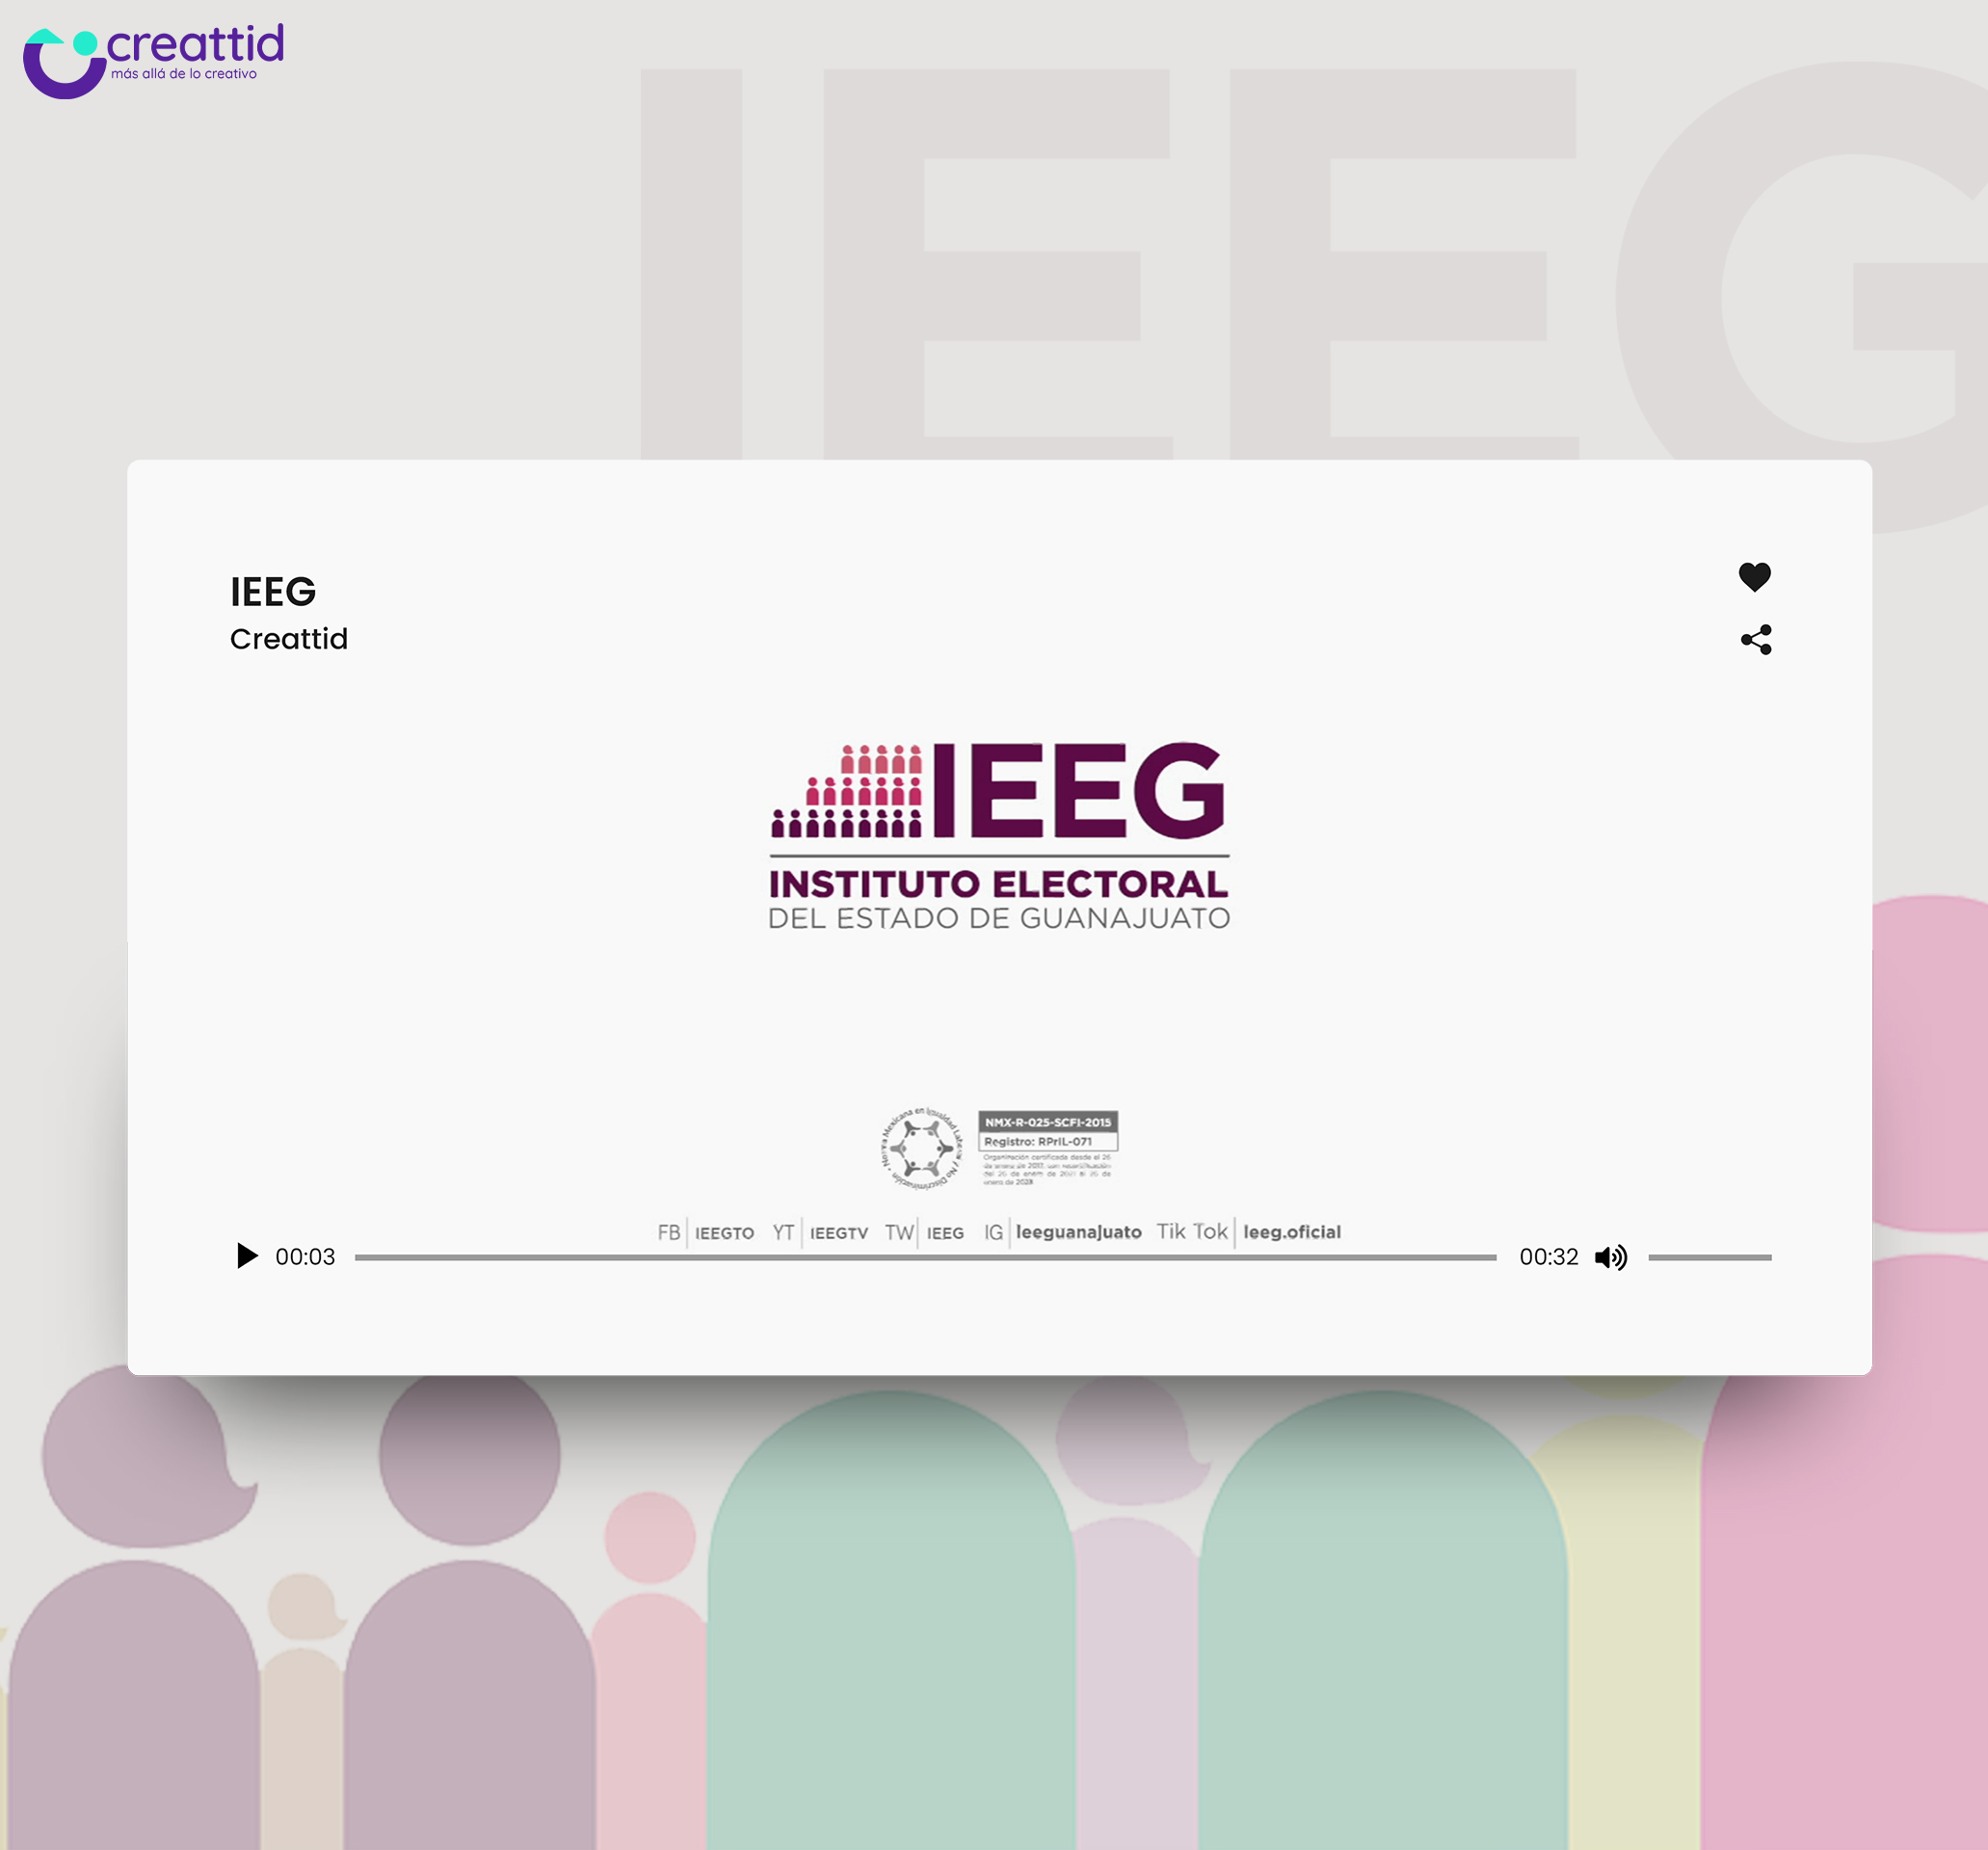 IEEG – Instituto Electoral del Estado de Guanajuato